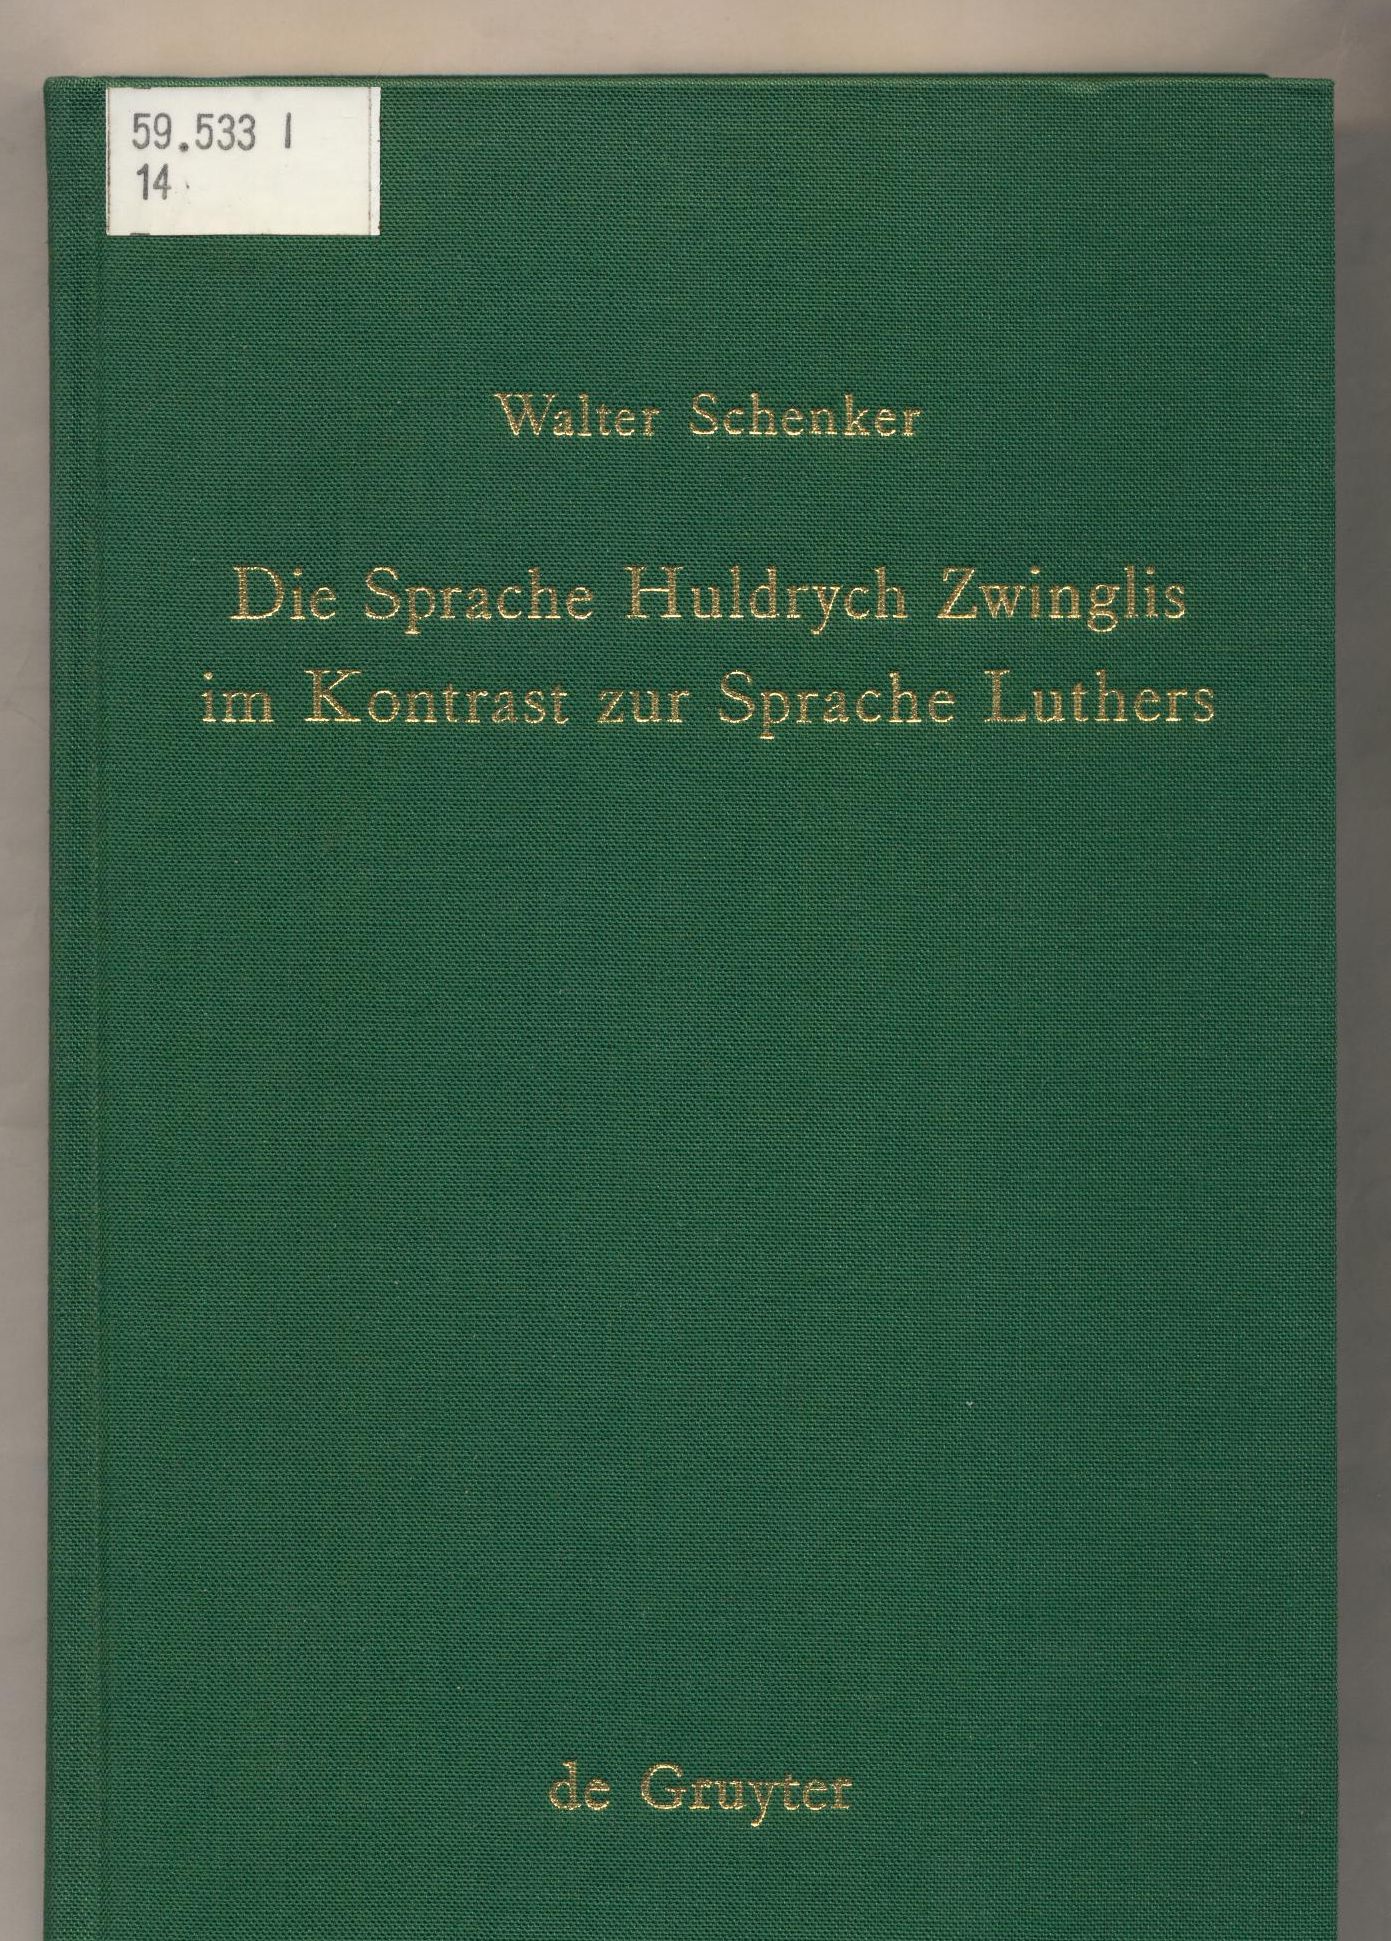 Die Sprache Huldrych Zwinglis im Kontrast zur Sprache Luthers  1. Auflage - Schenker, Walter